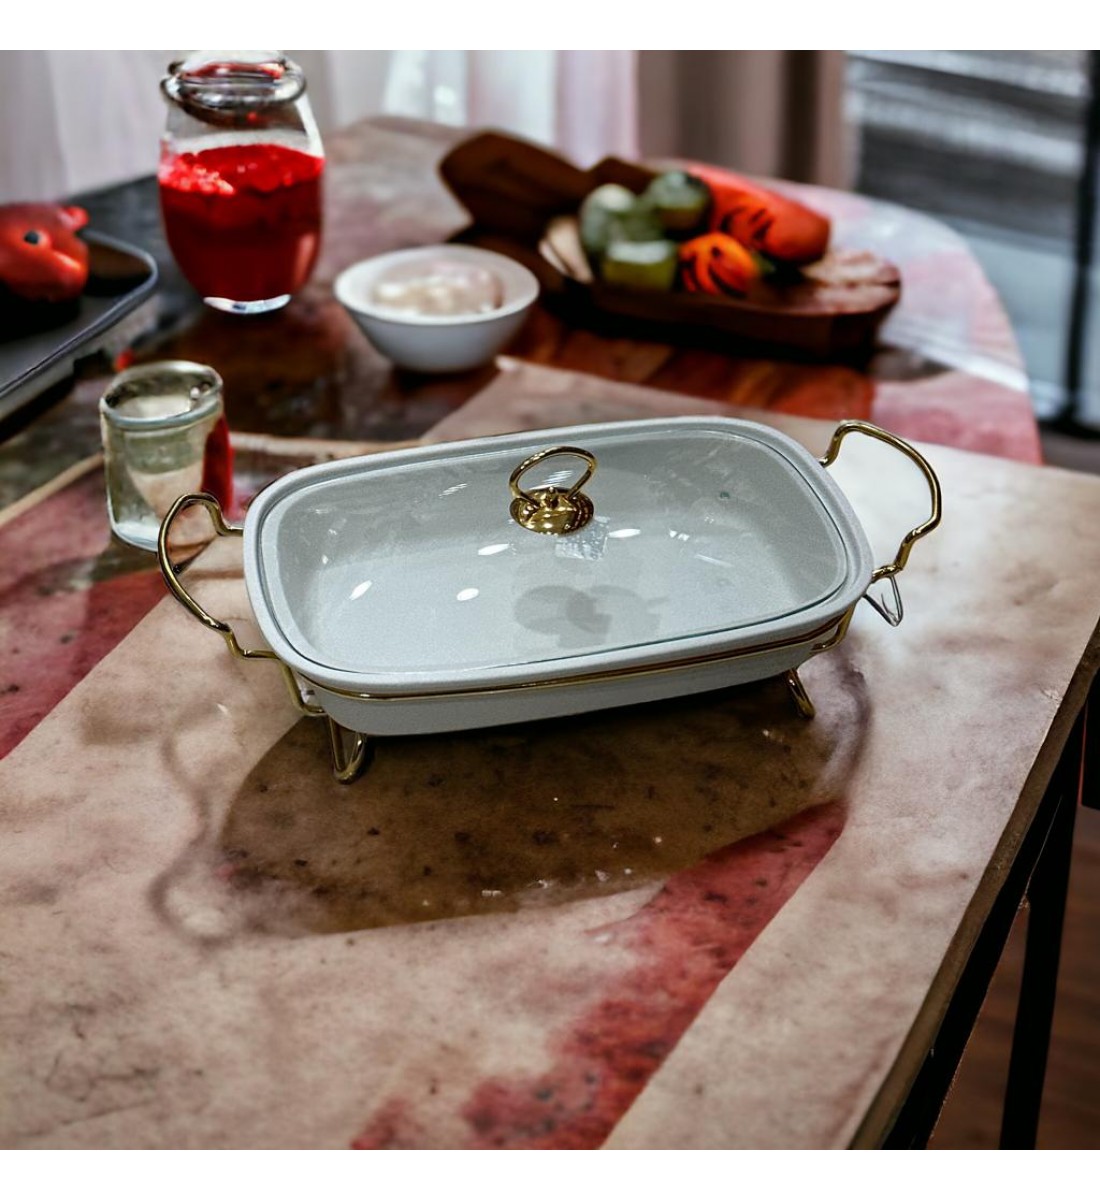 سخان بوفية صحن تقديم سيراميك لتسخين الطعام مزود بغطاء بتصميم فريد ممي11×24×36سم 